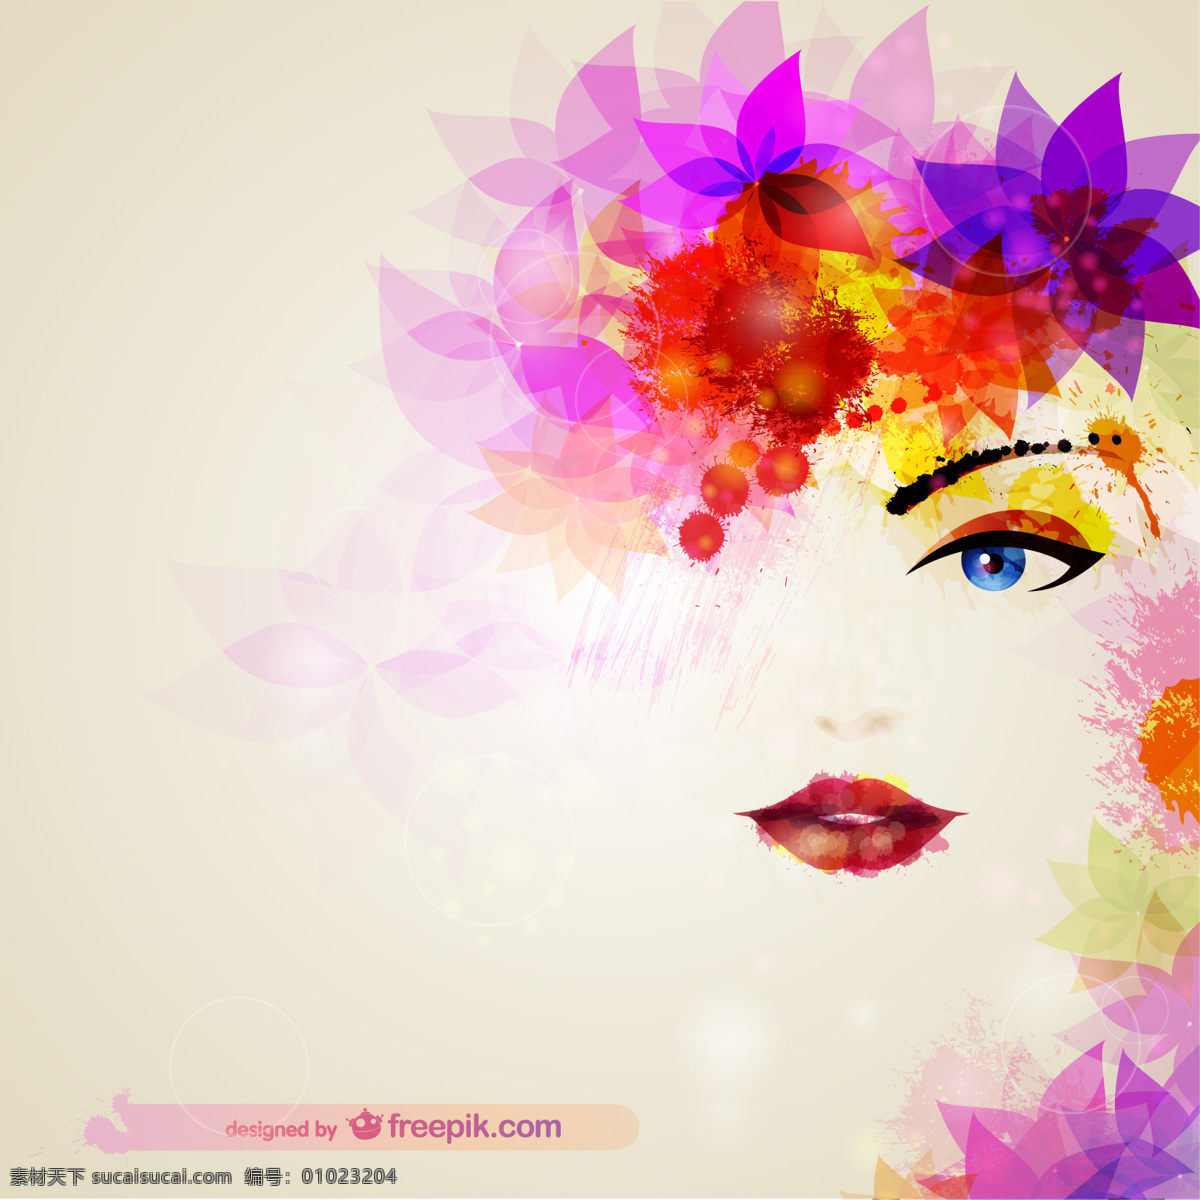 水彩画 女子 脸上 带 花 头发 背景 花卉 时尚 自然 模板 美容 面部 花卉背景 壁纸 布局 外形 元素 化妆品 化妆 花卉等 白色